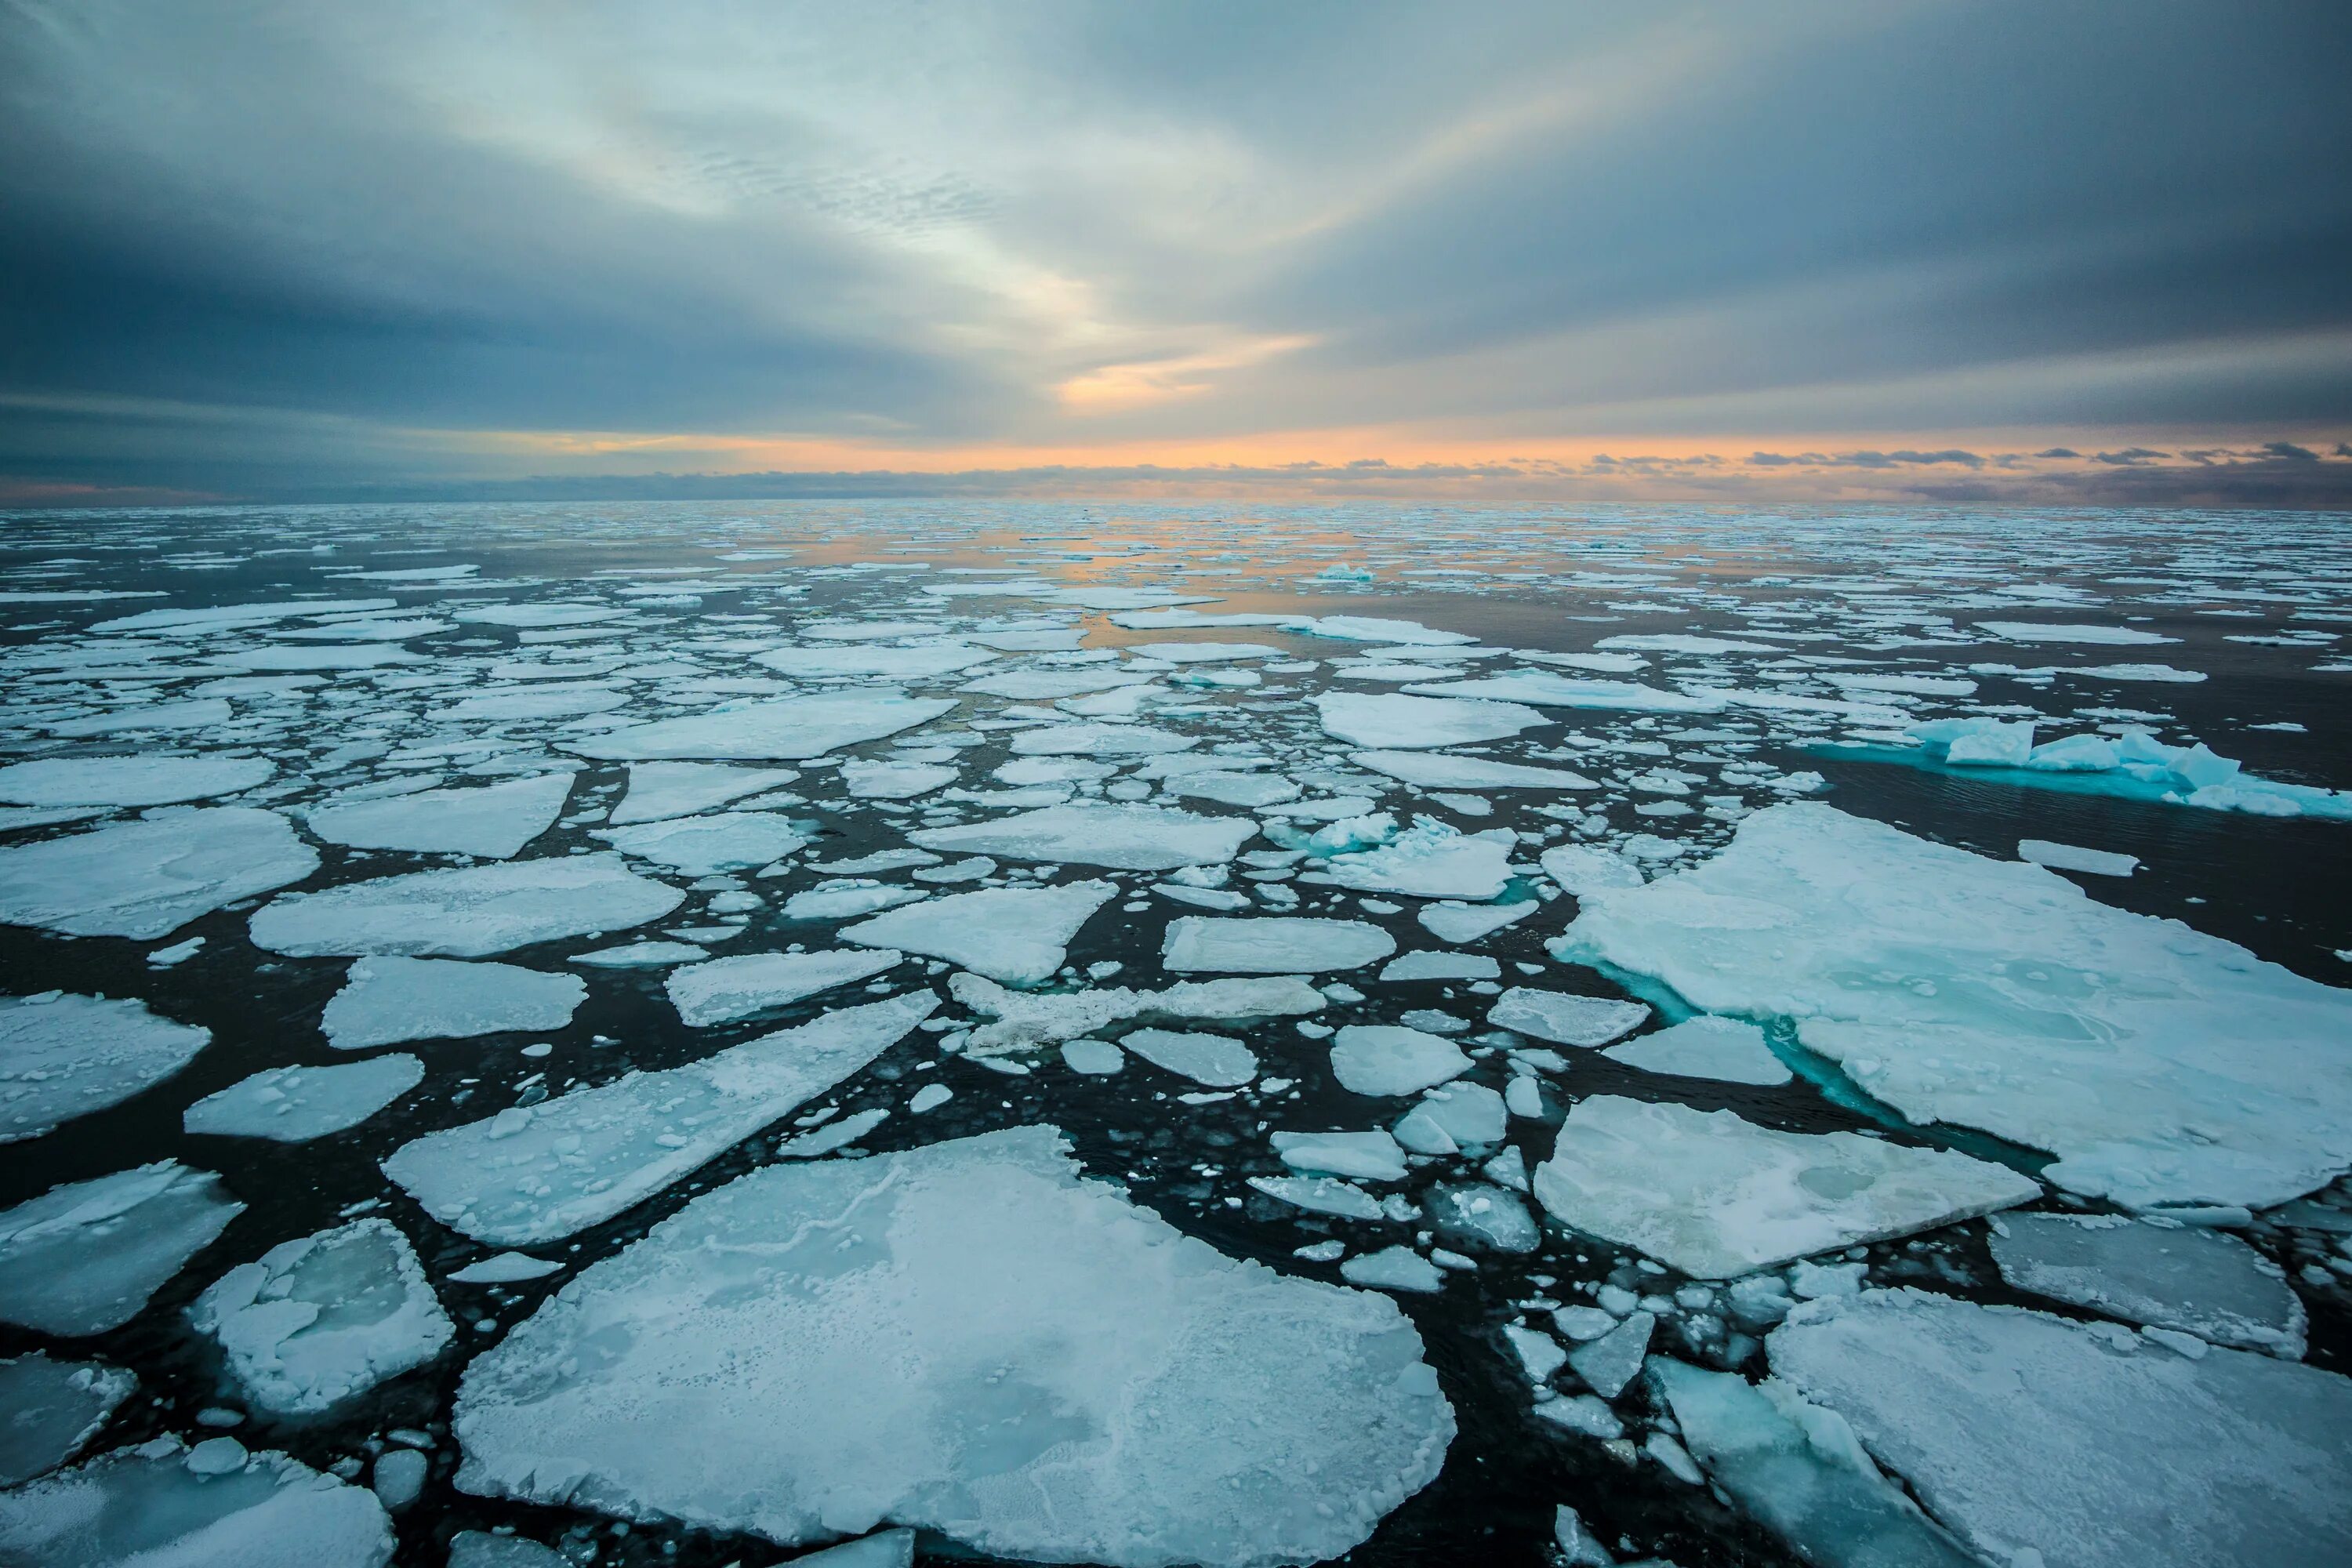 Лед растаявший он вода. Таяние ледников в Арктике. Арктика Северный Ледовитый океан. Таяние ледников глобальное потепление. • Арктика — таяние арктических льдов,.